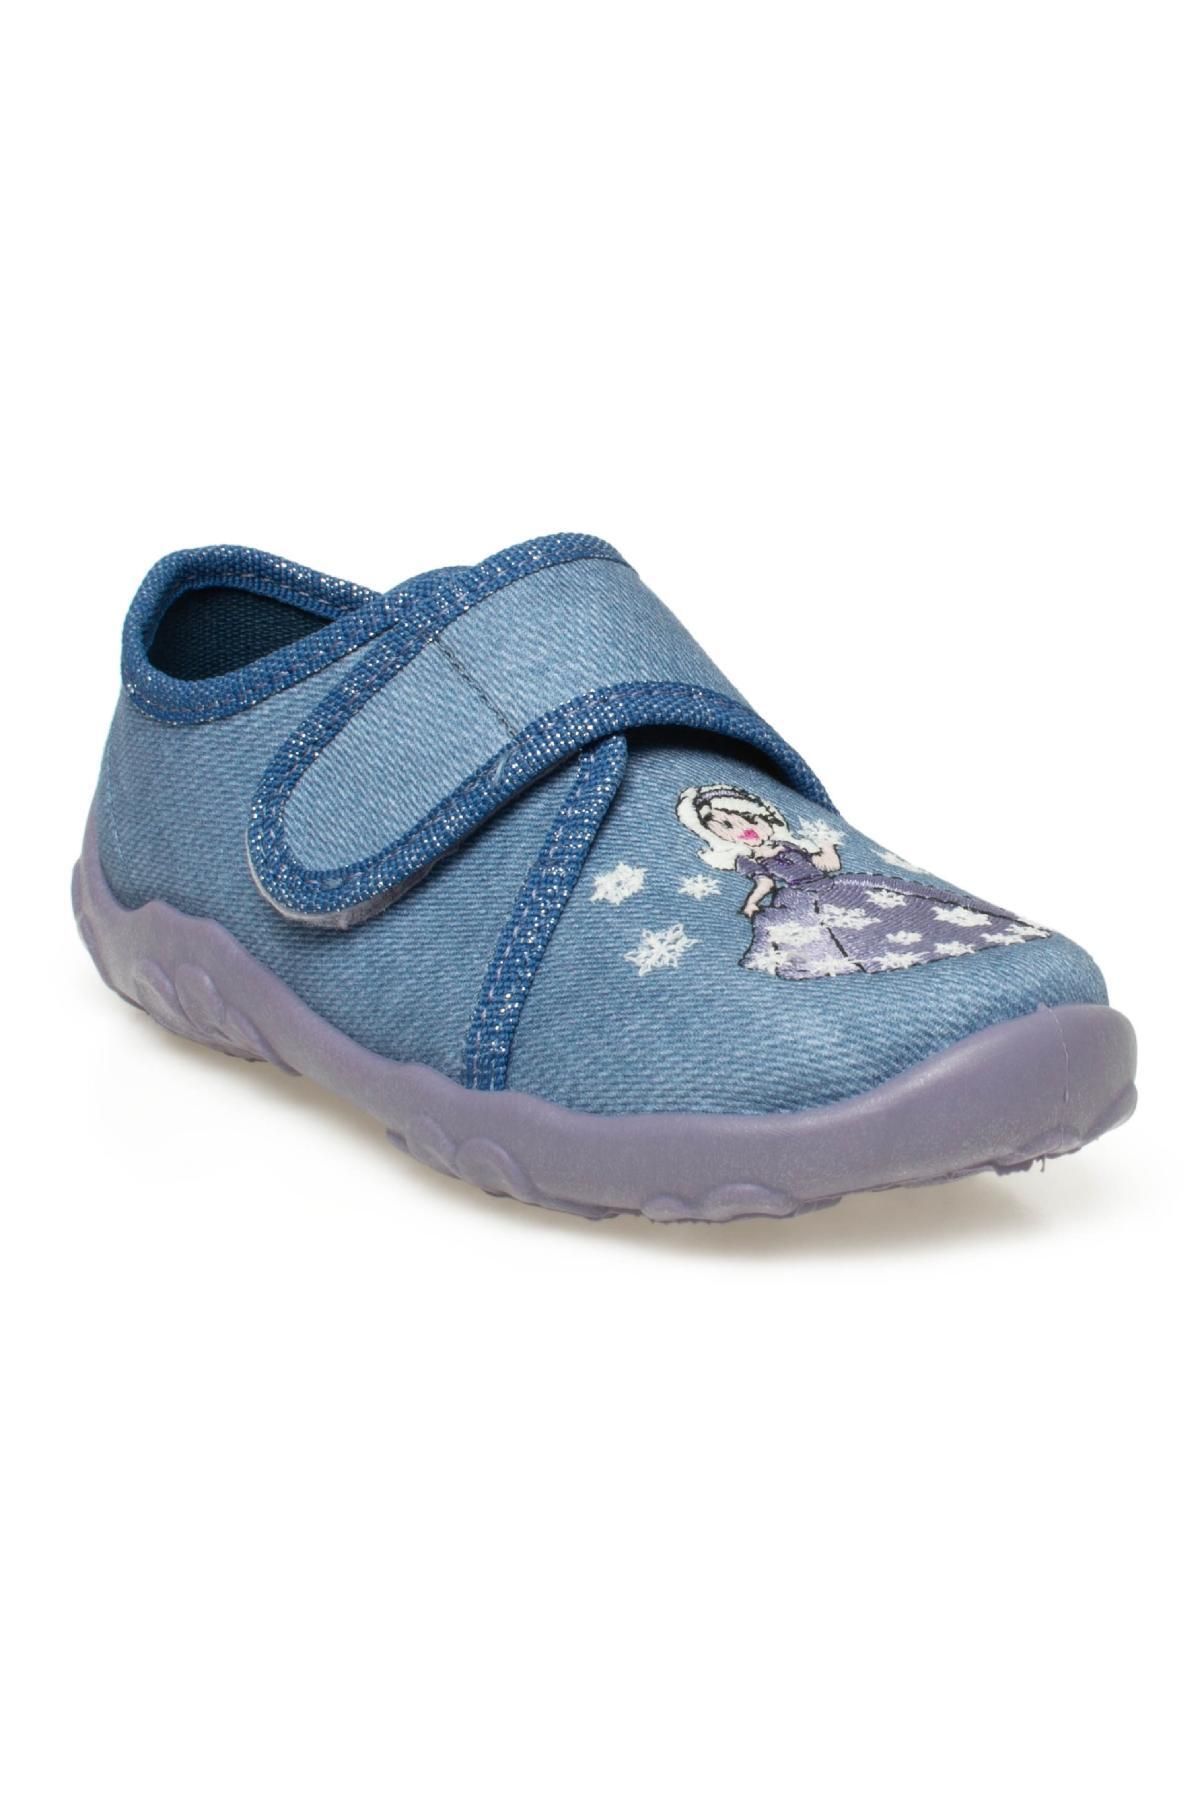 Superfit 000258 Bonny Ev Mavi Kız Çocuk Ayakkabı